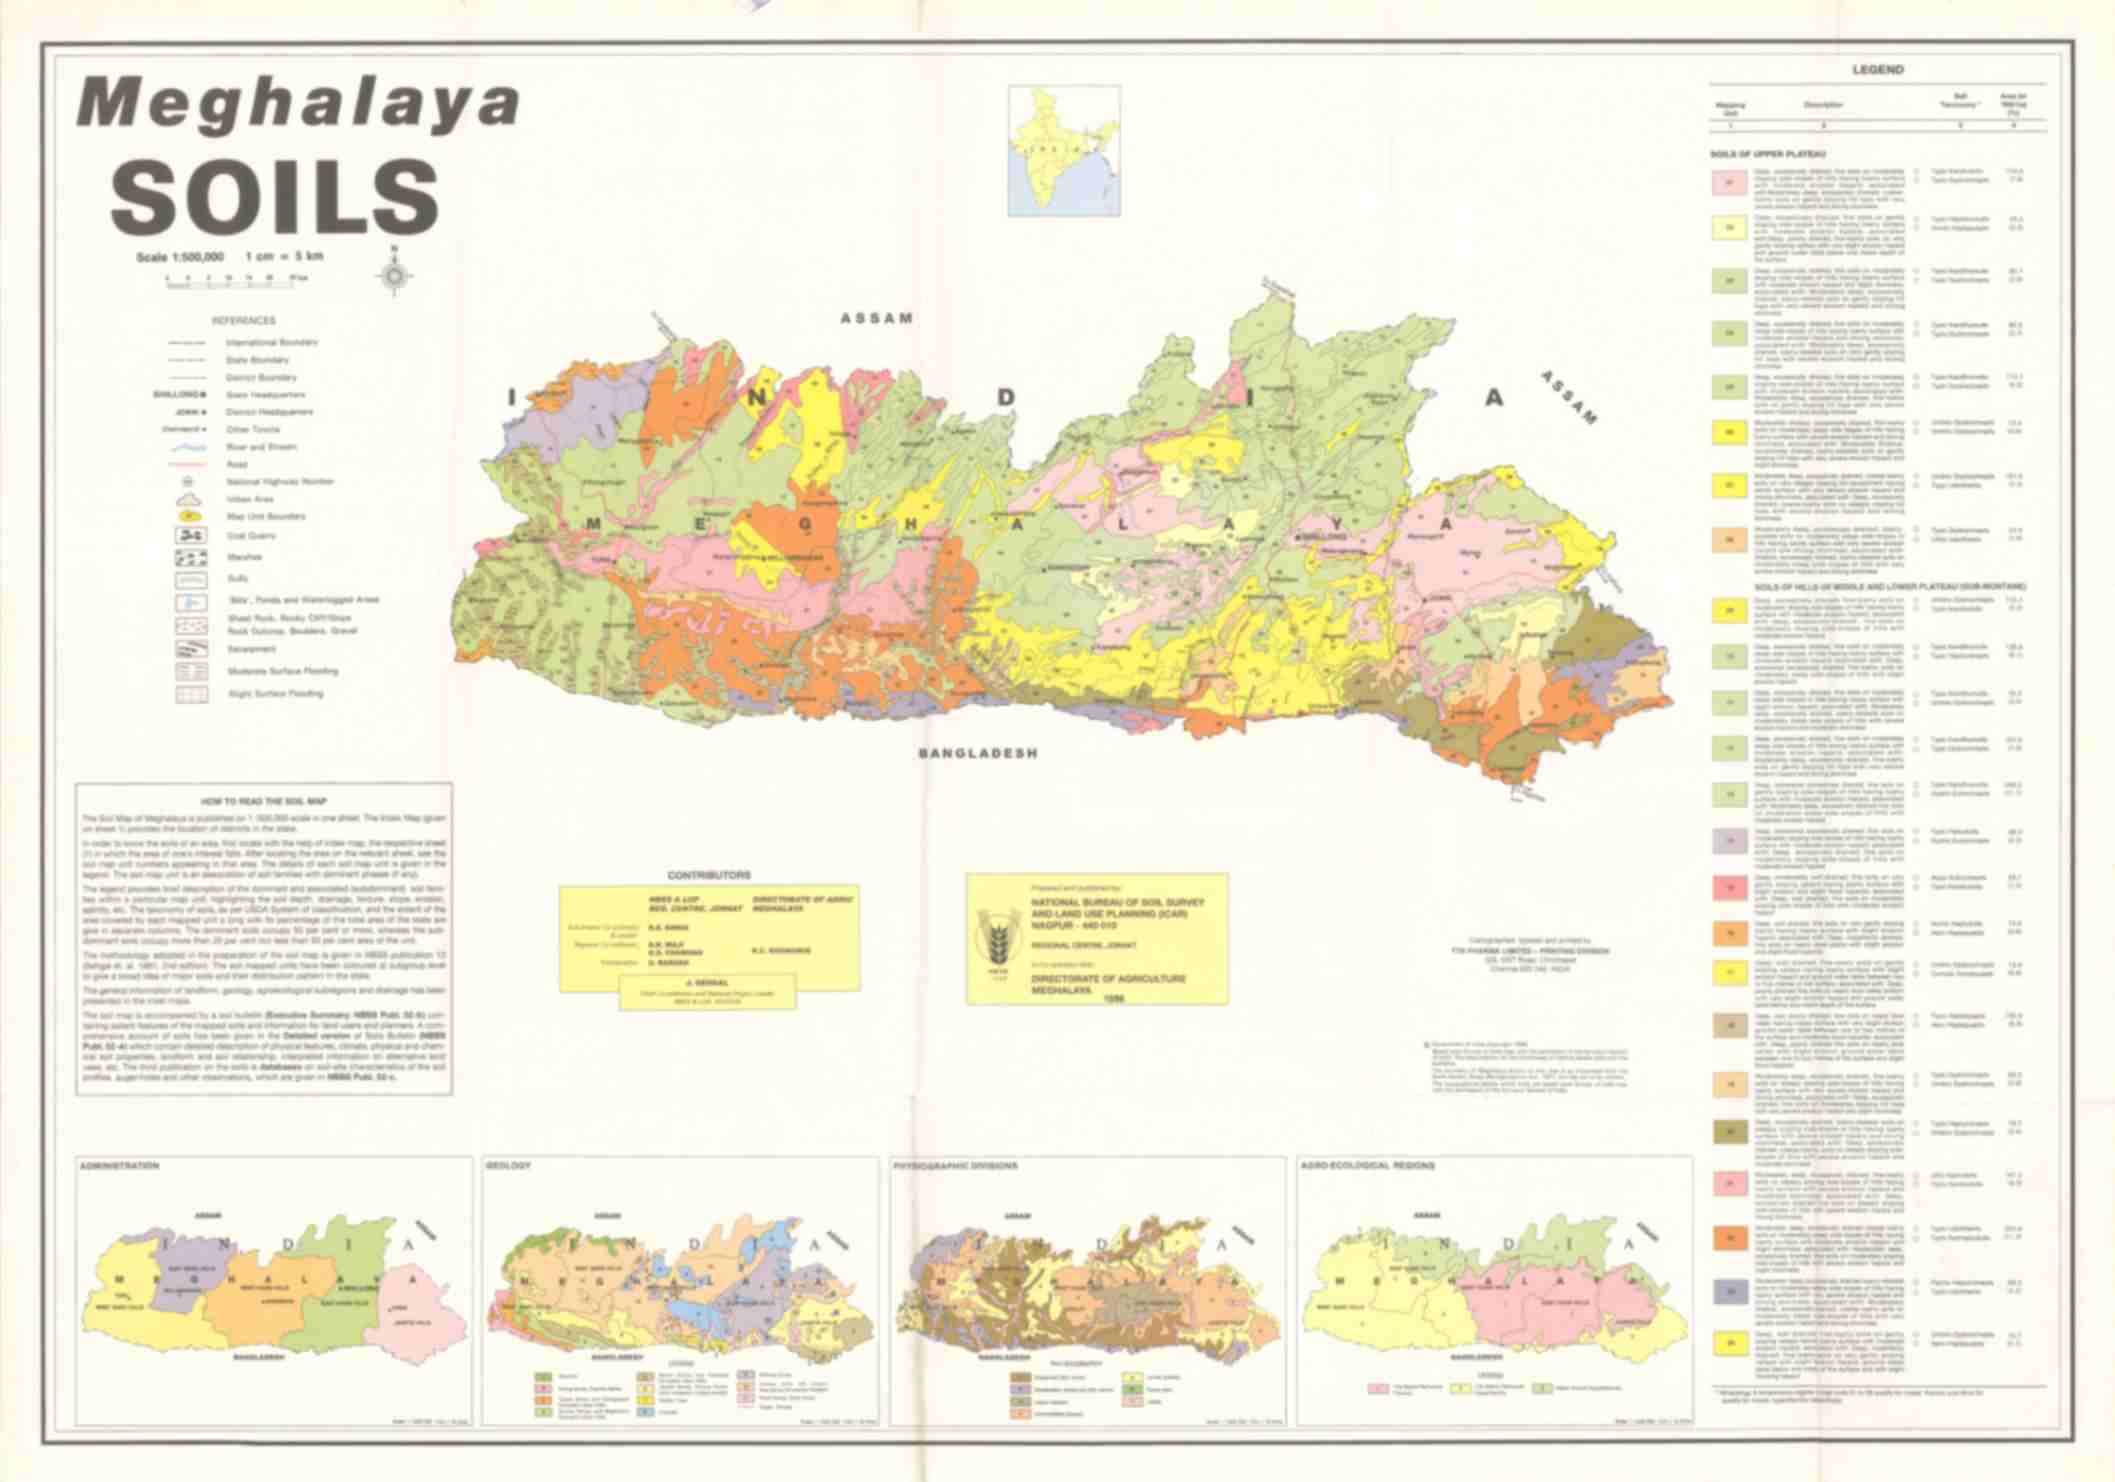 Types of Soils in Meghalaya